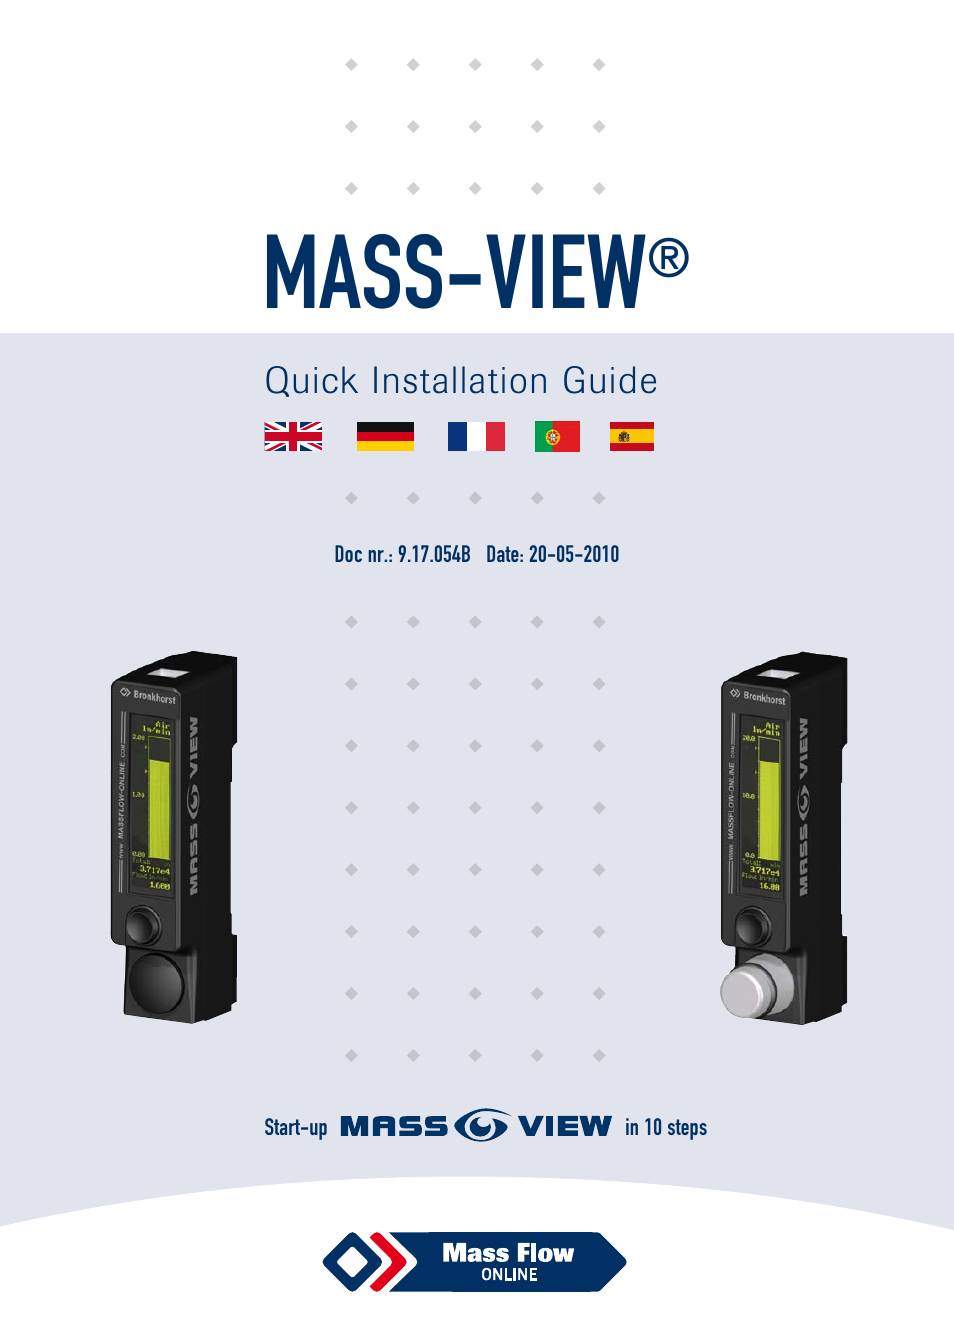 MASS-VIEW Series Quick Start